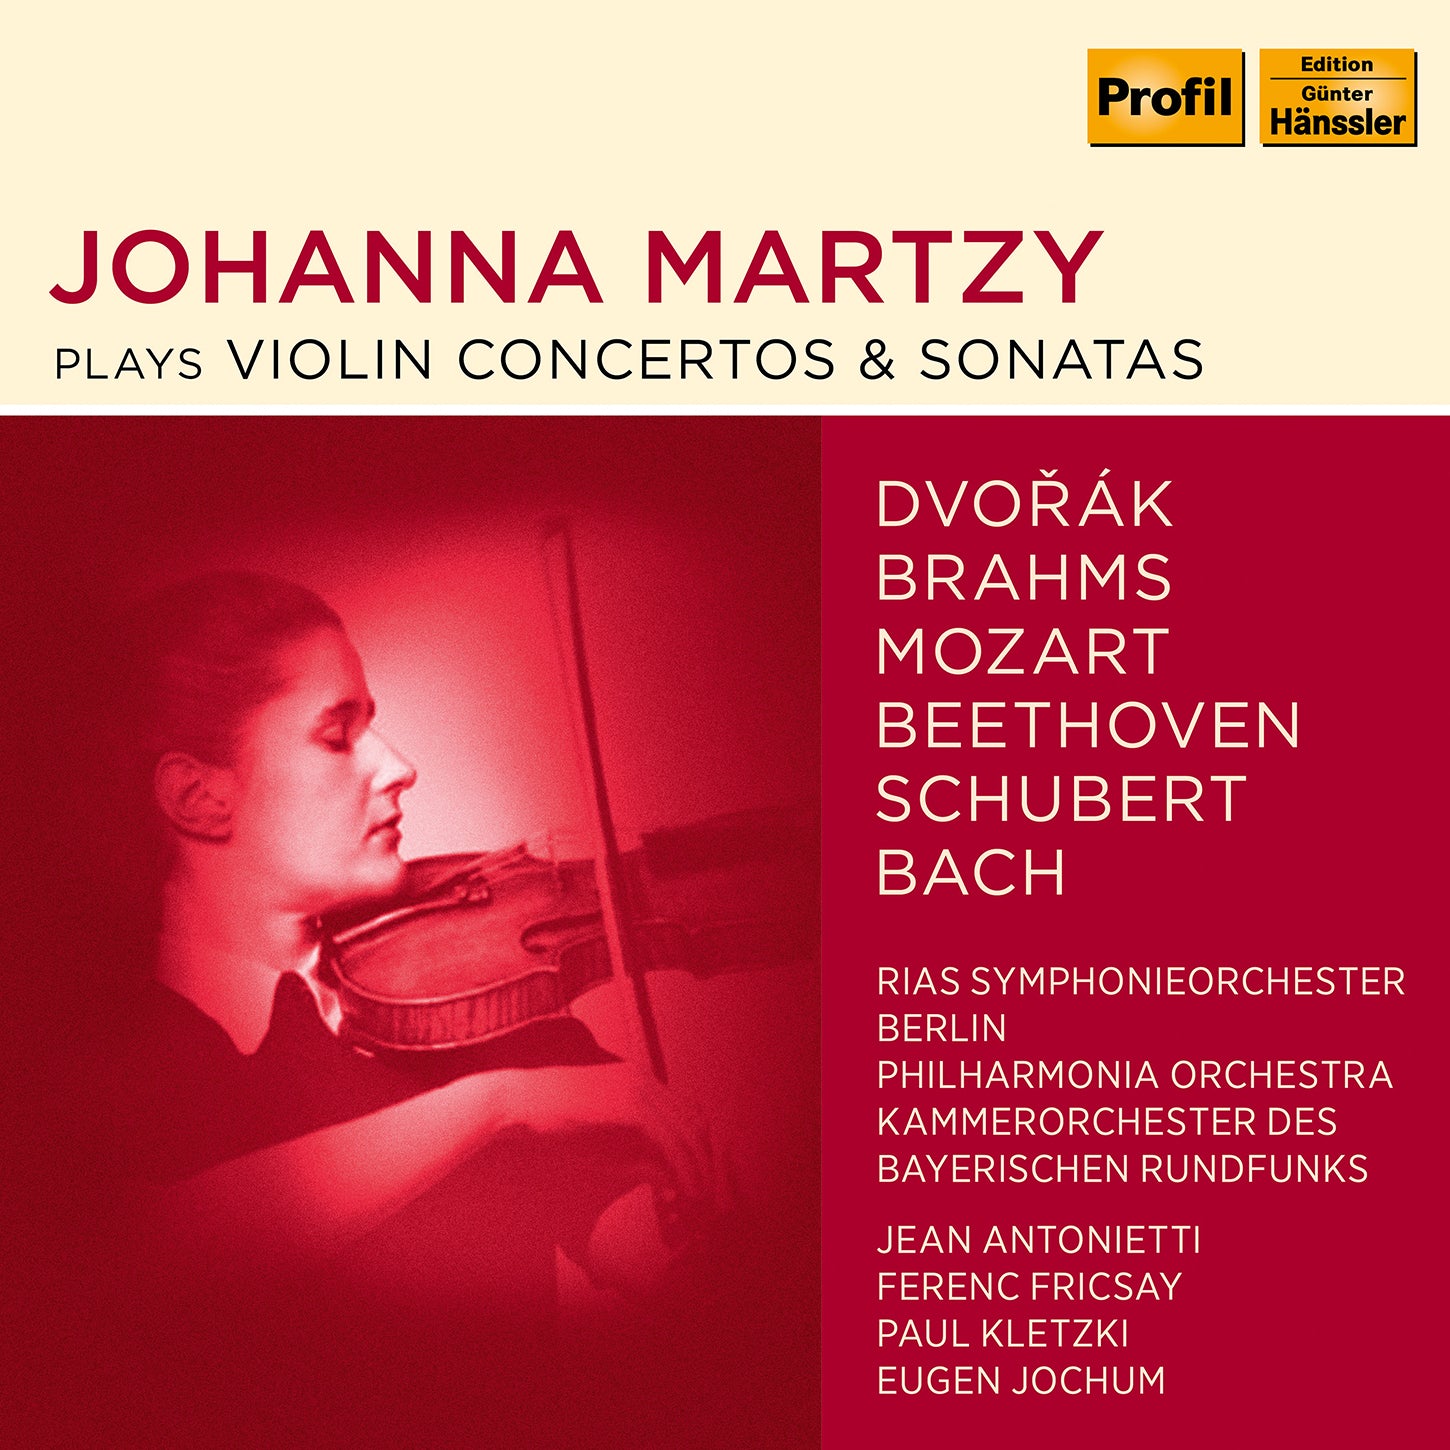 Johanna Martzy plays Violin Concertos & Sonatas